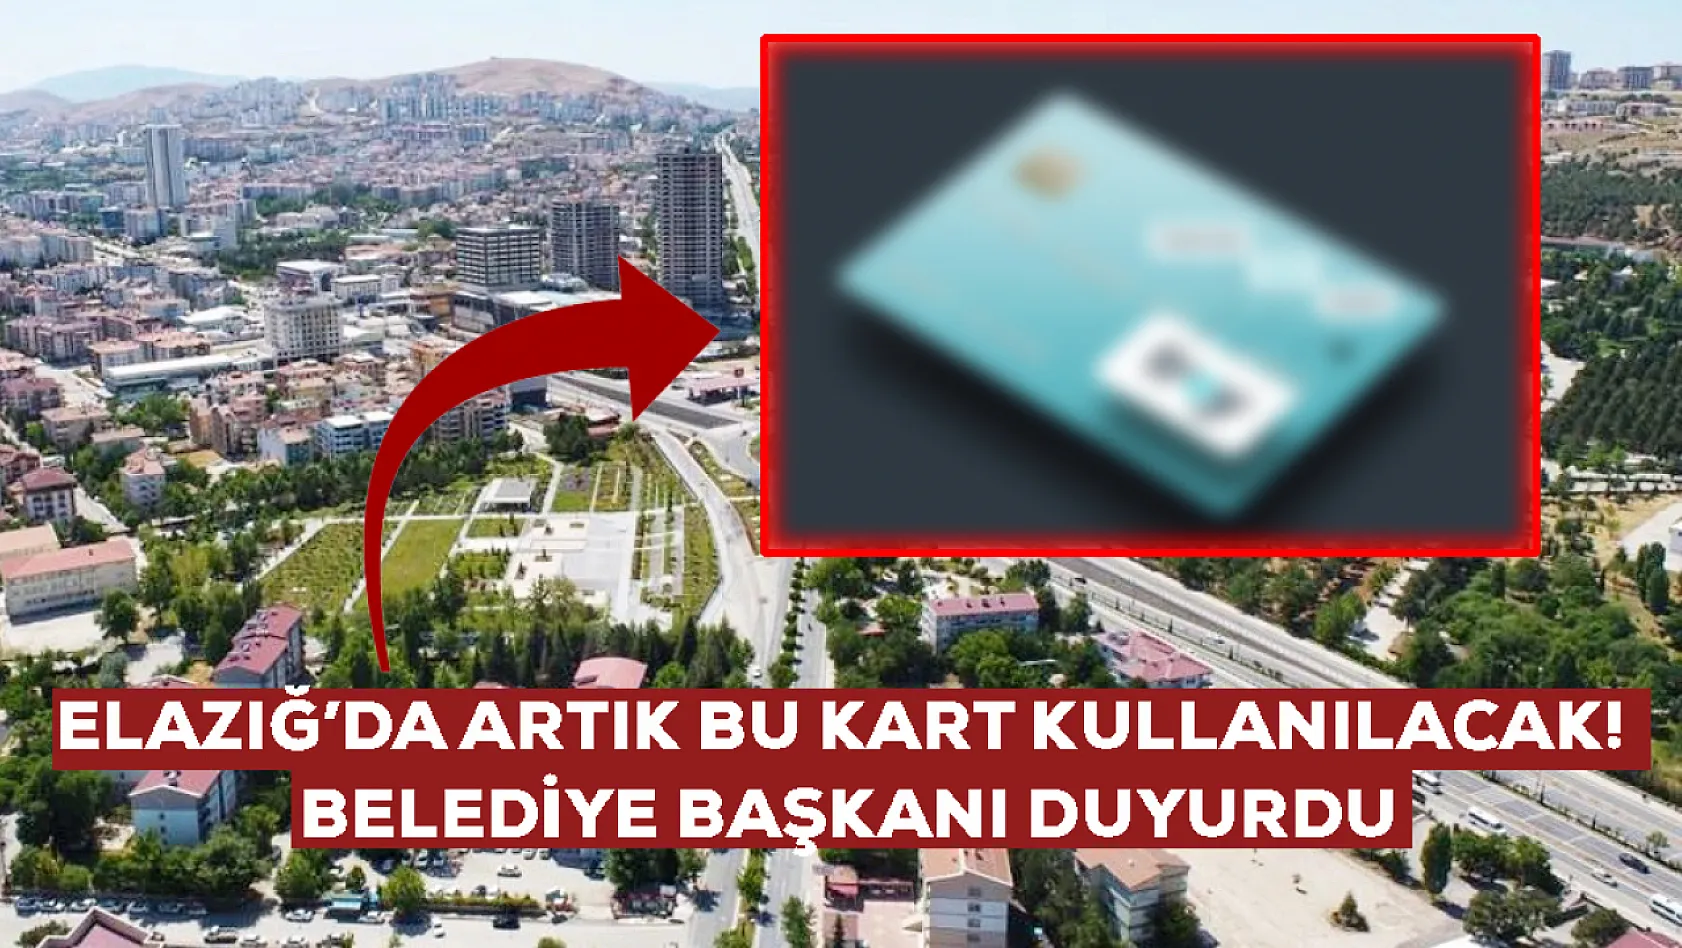 Elazığ Belediyesi duyurusunu yaptı: Artık bu kart kullanılacak!